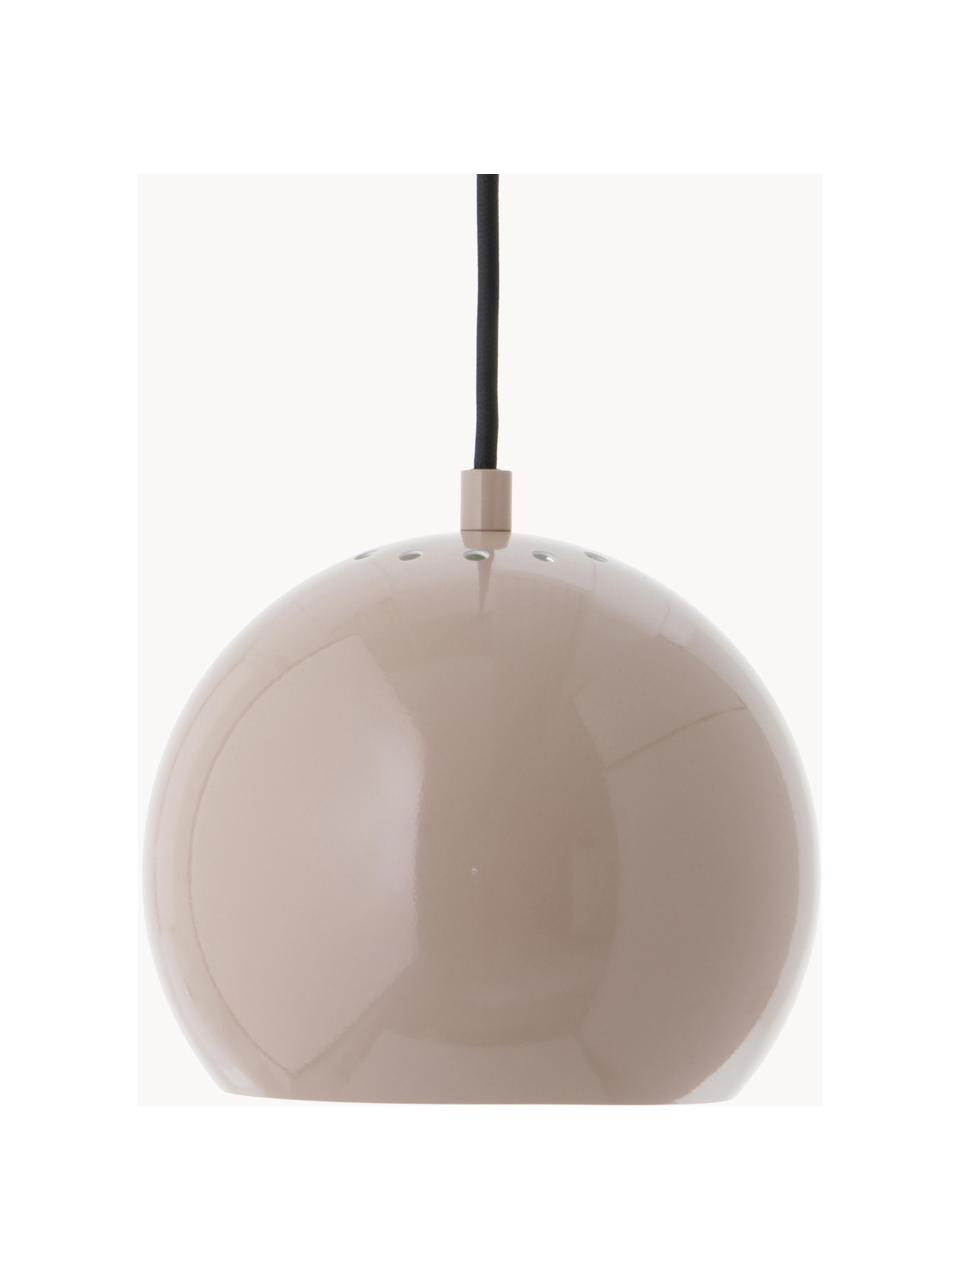 Lampa wisząca Ball, Beżowy, Ø 18 x W 16 cm